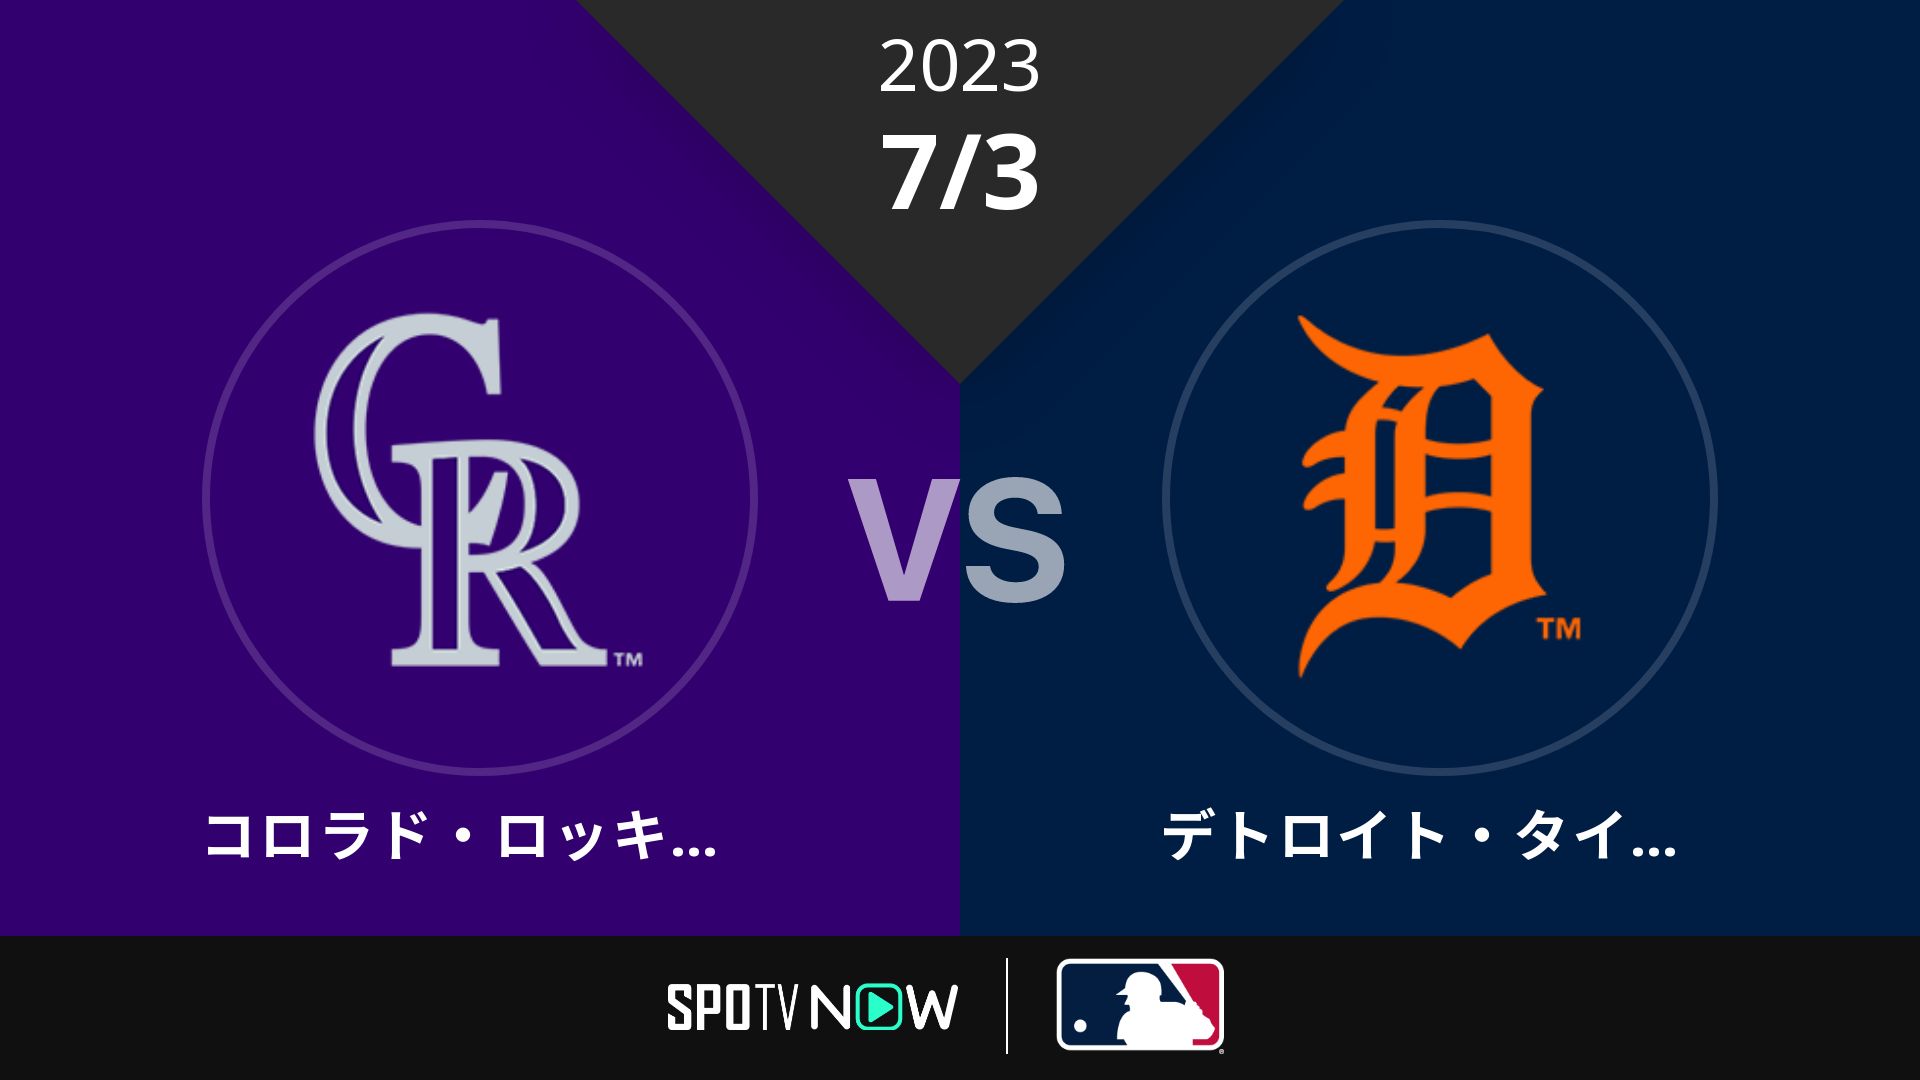 2023/7/3 ロッキーズ vs タイガース [MLB]